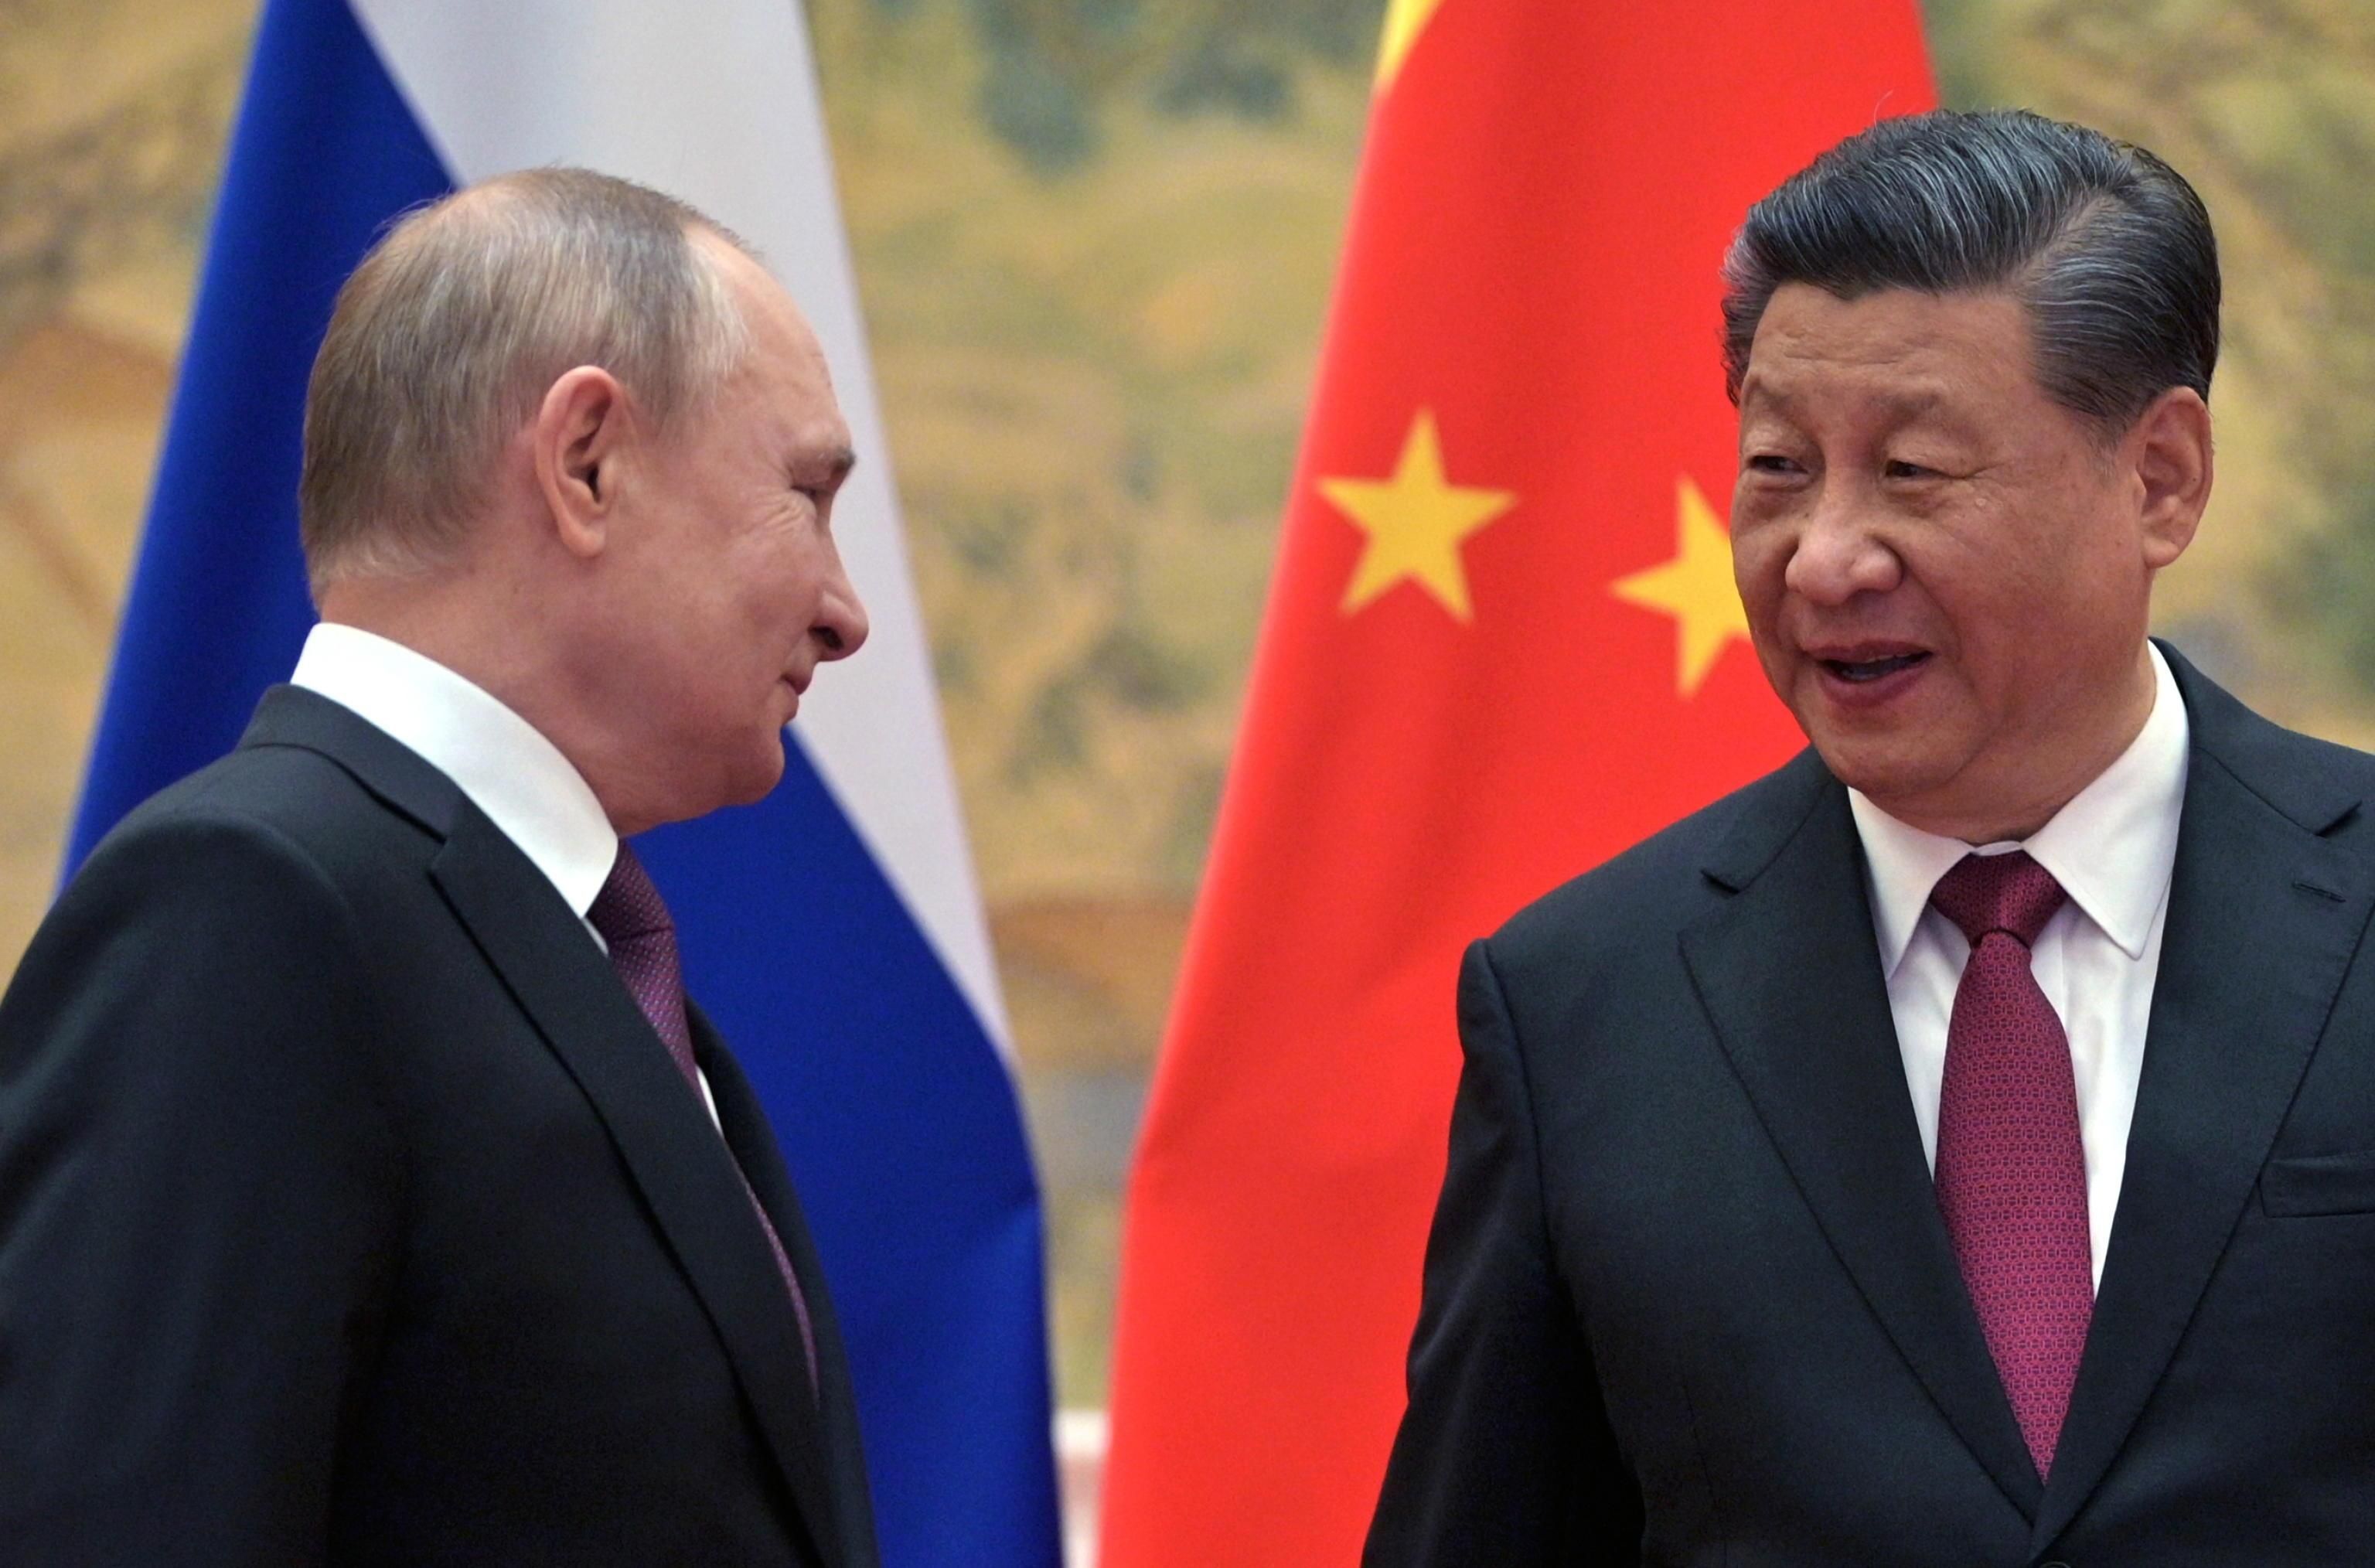 Китай может давить на Россию по сотрудничеству с Индией, – Пойта